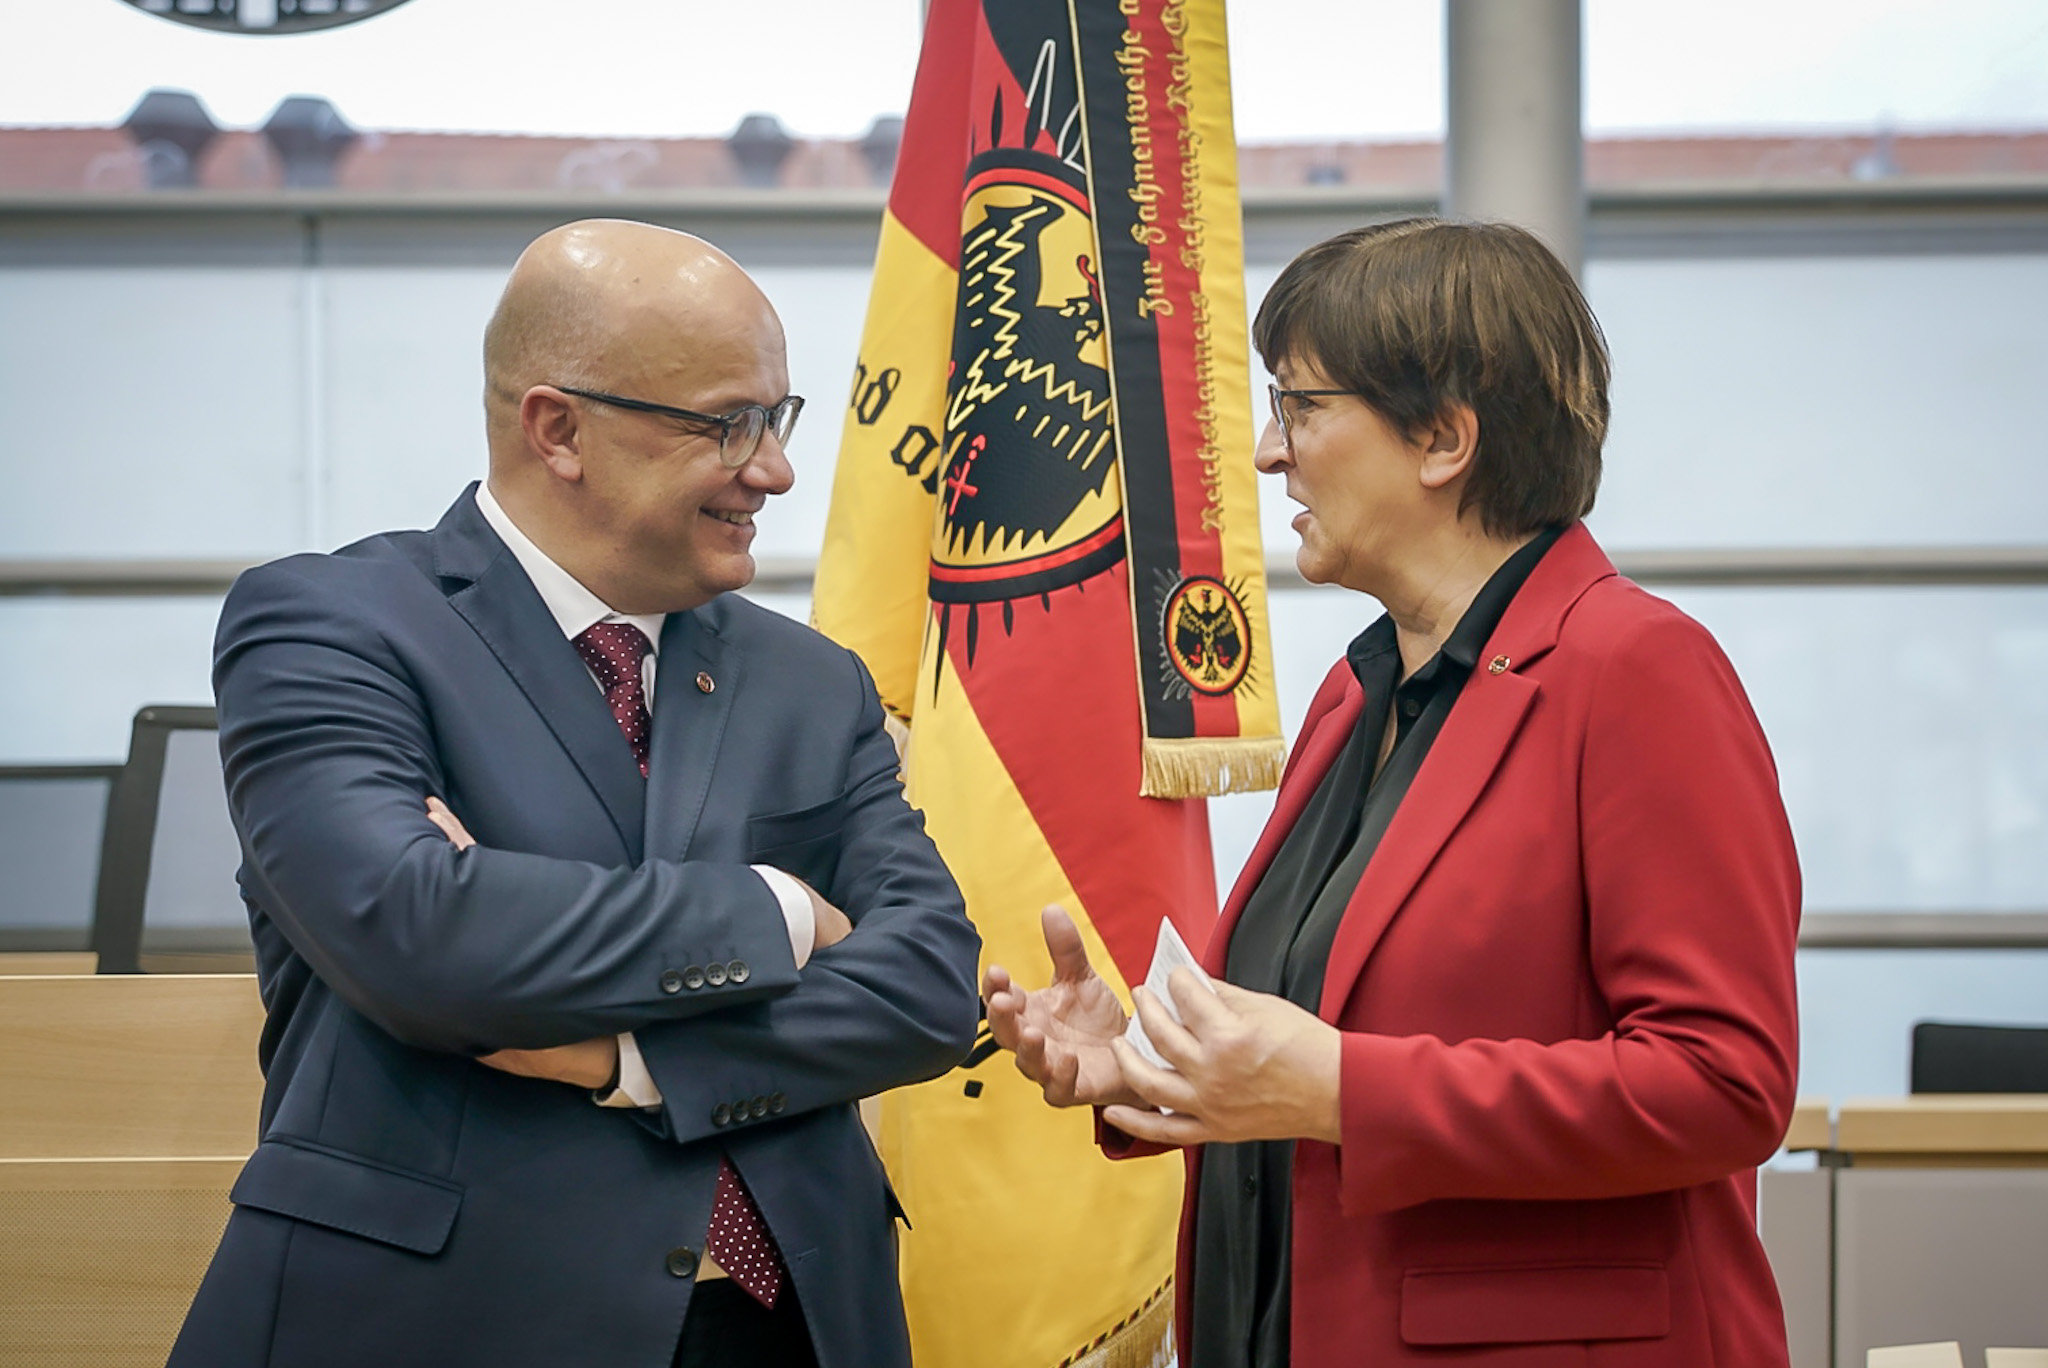 Für die Demokratie: Der Reichsbanner-Vorsitzende Fritz Felgentreu mit SPD-Chefin Saskia Esken am Rande der Feierstunde im Landtag von Sachsen-Anhalt